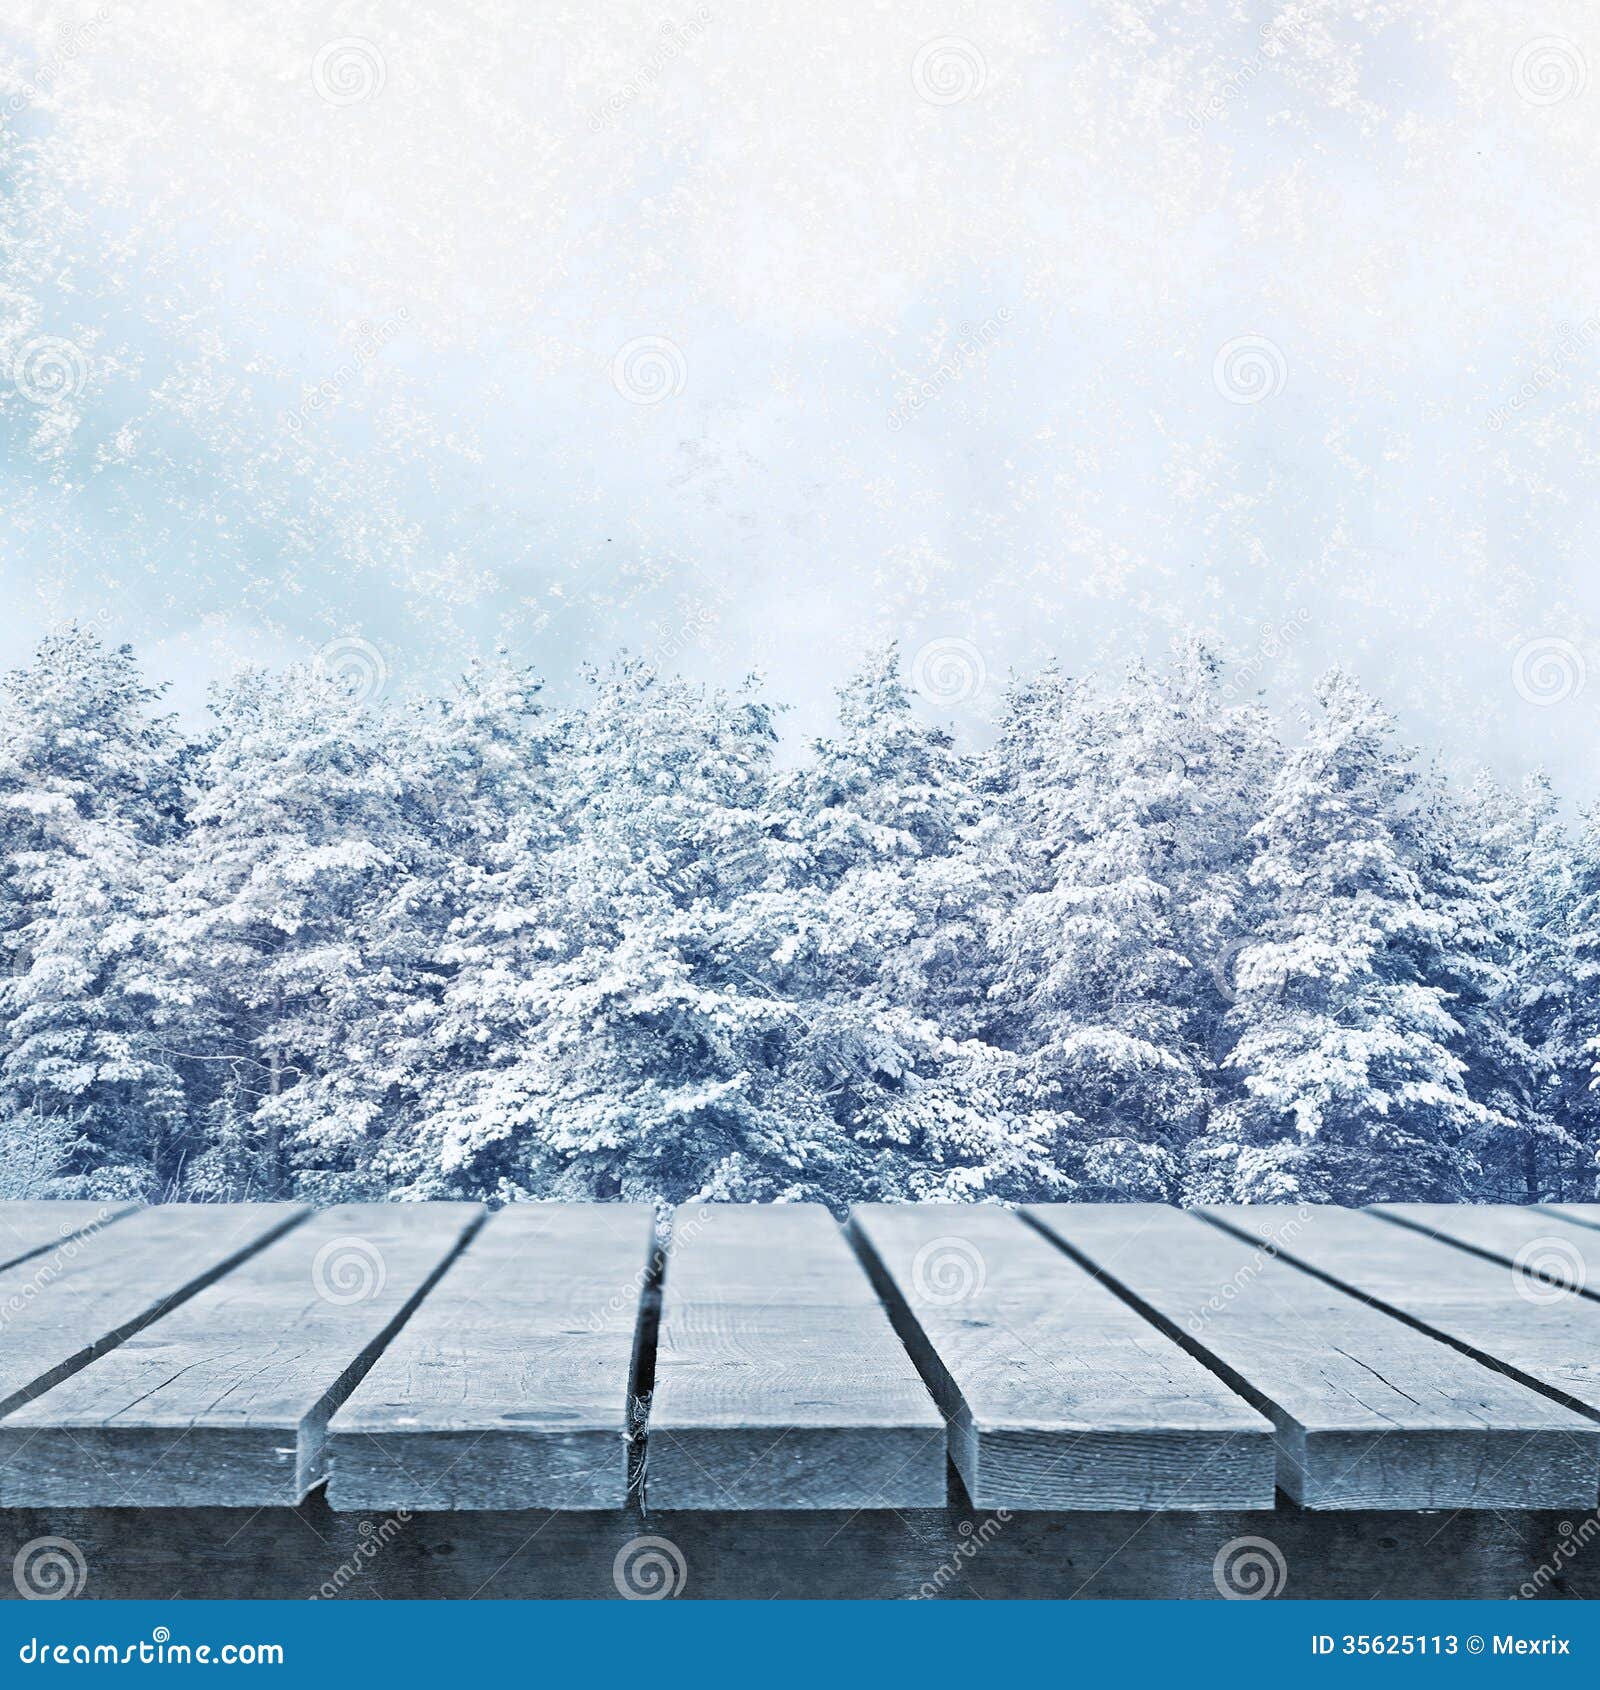 Winter Scenic Stock Photos - Image: 35625113